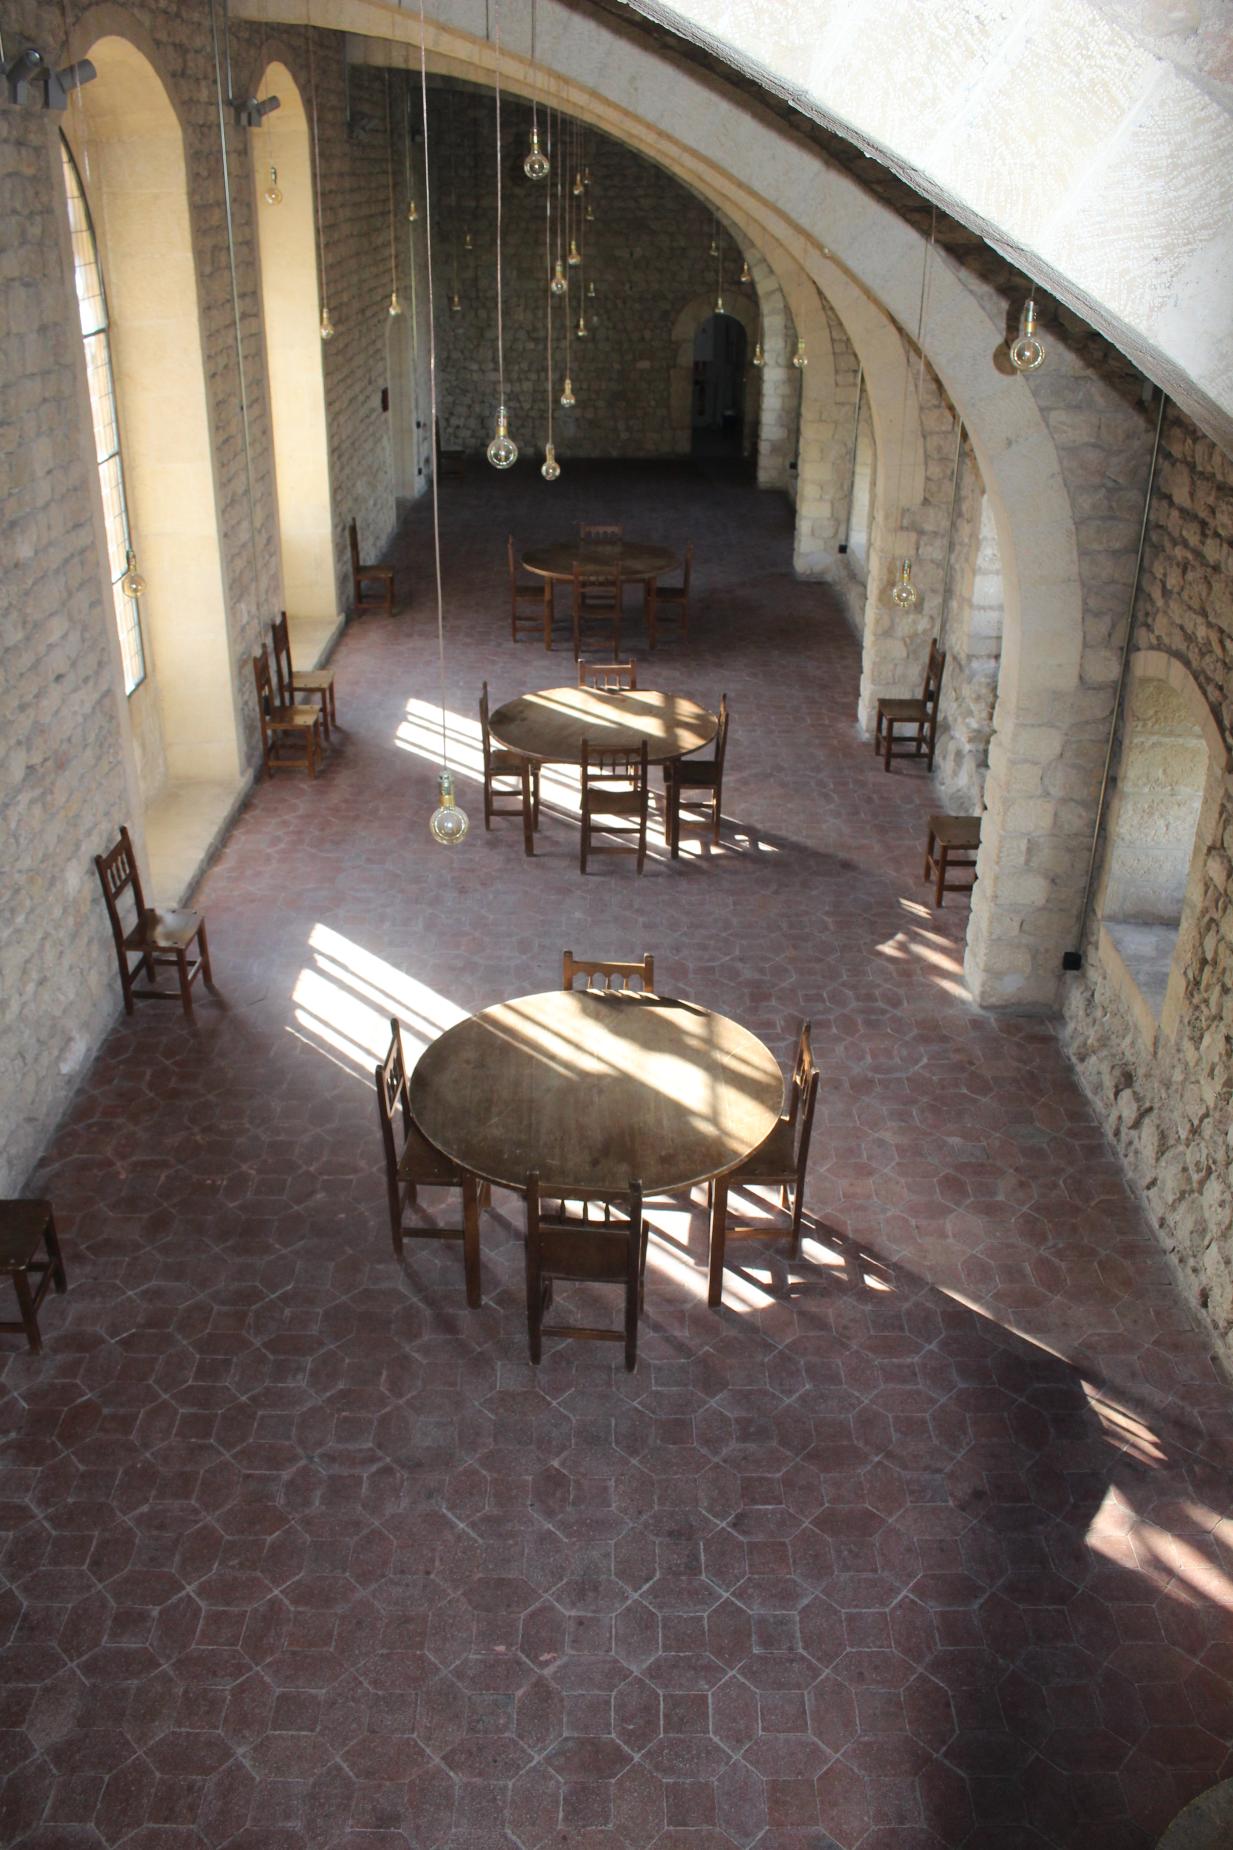 Sala gótica con algunas mesas